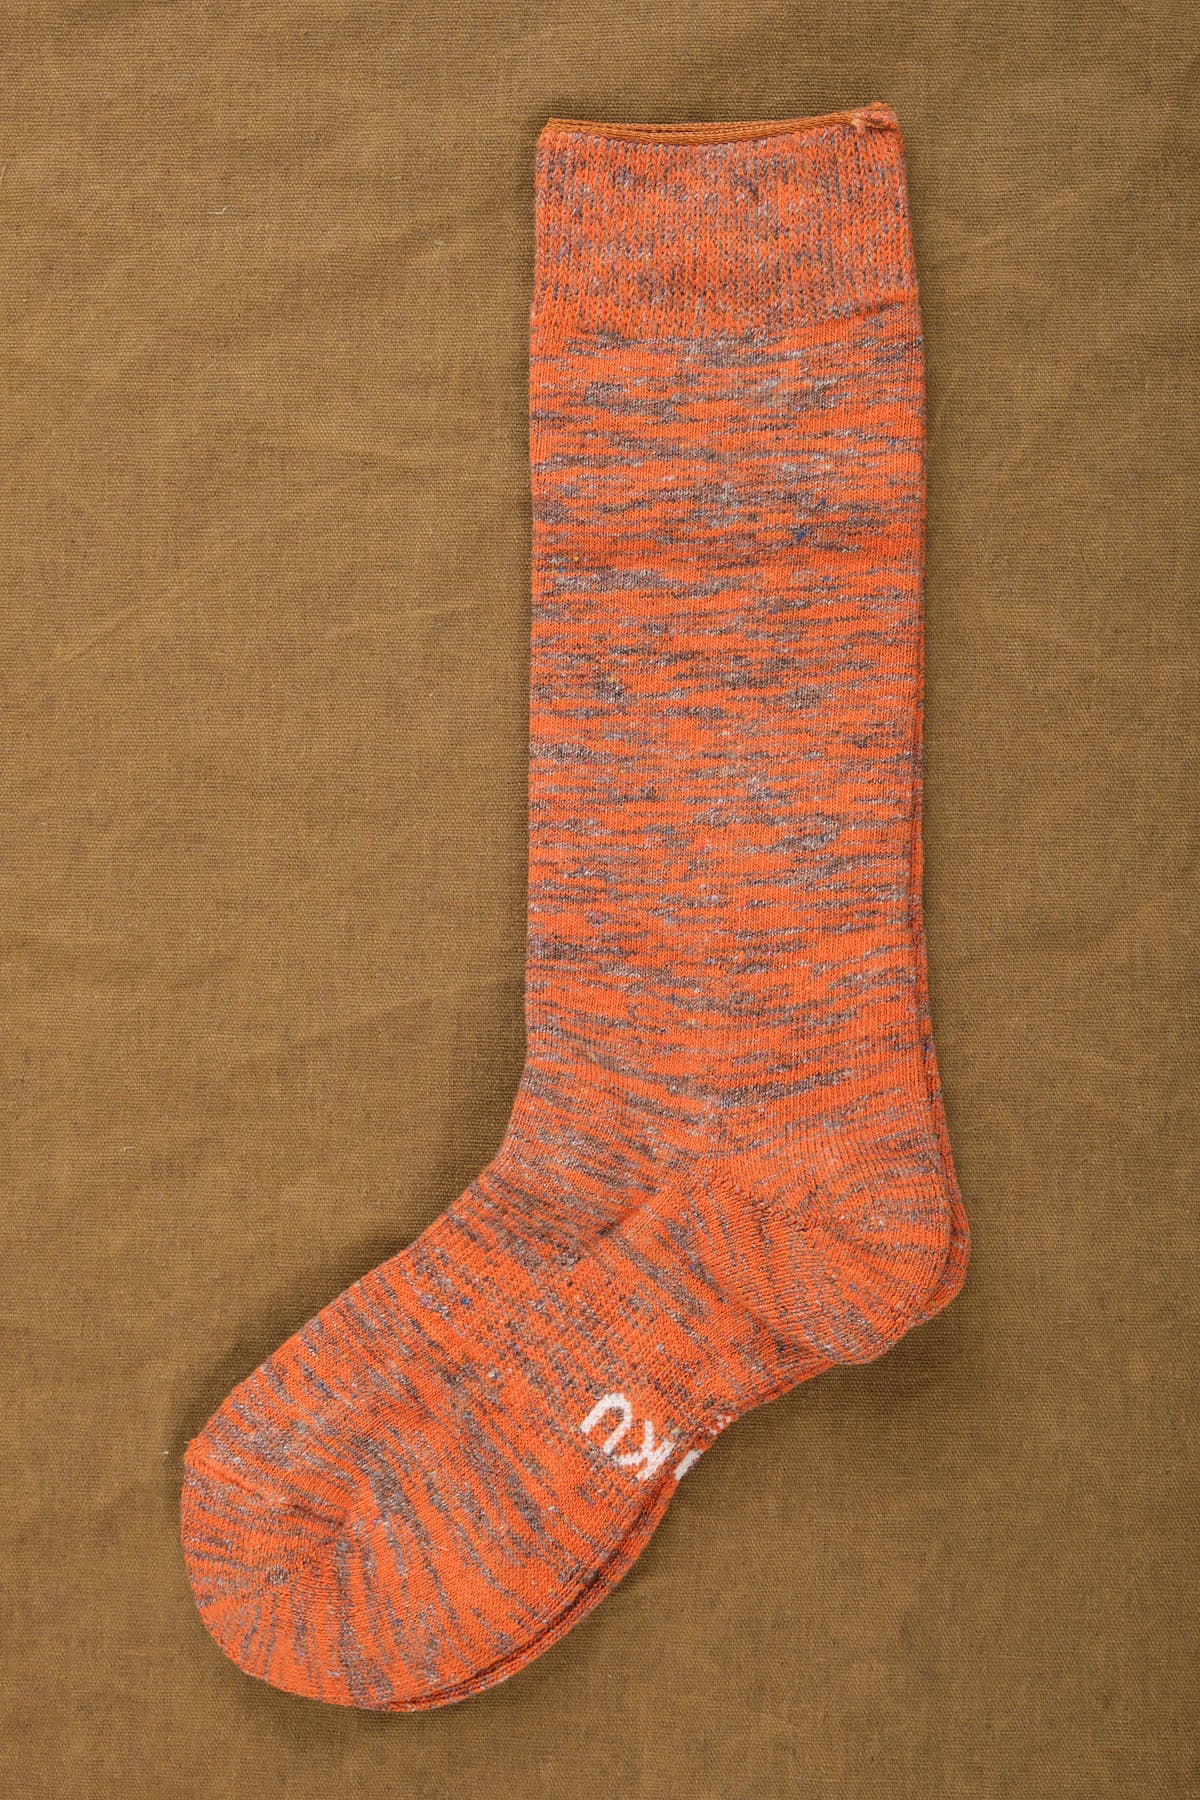 Kontex Moku Socks in Orange